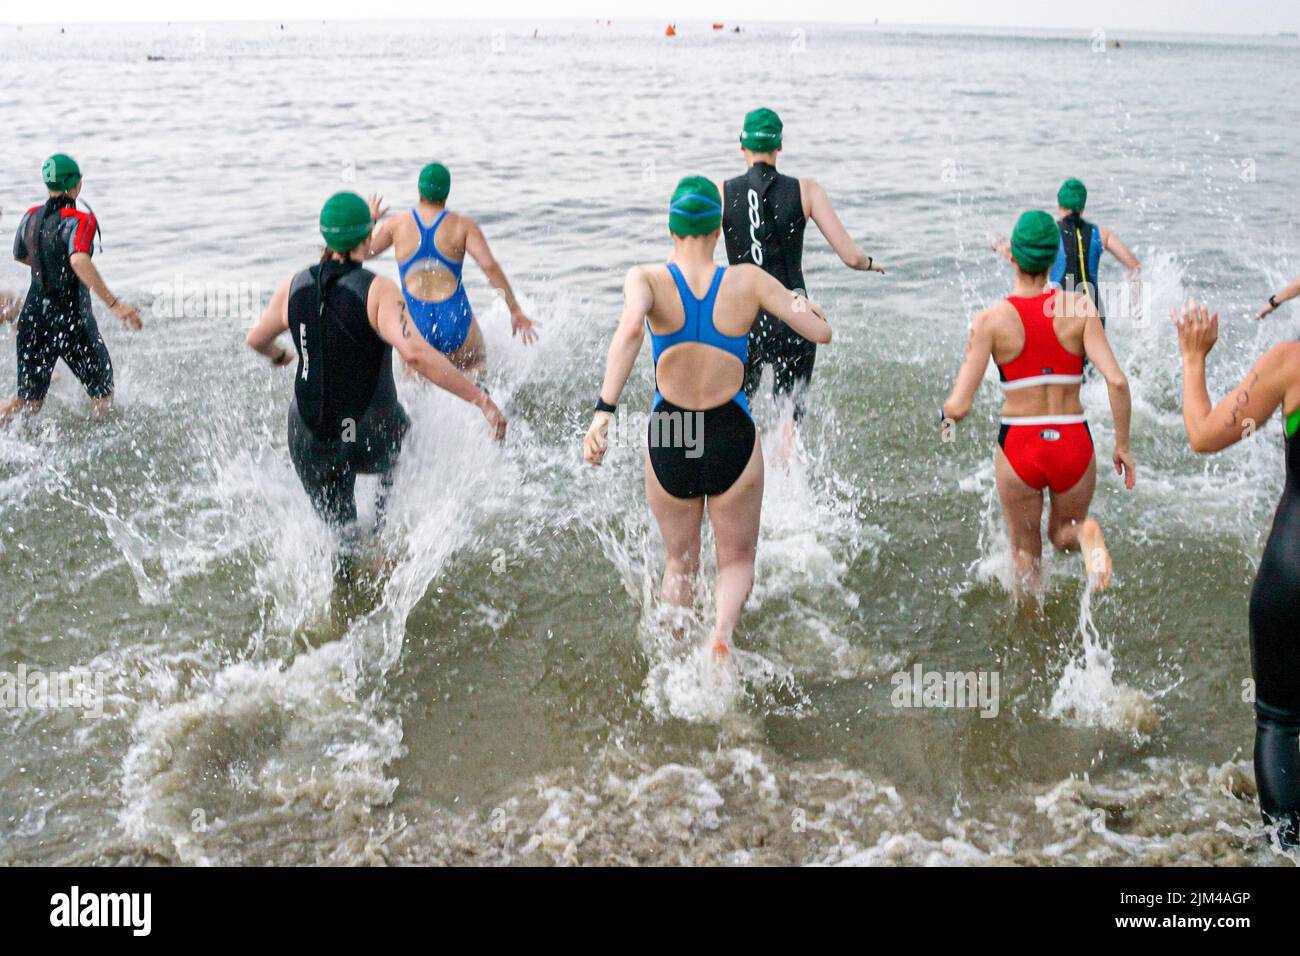 Hampton Virginia,Tidewater Area,Buckroe Beach,Tri American Triathlon Event,Schwimmer Frauen weibliche Teilnehmer starten Rennen ins Wasser Stockfoto